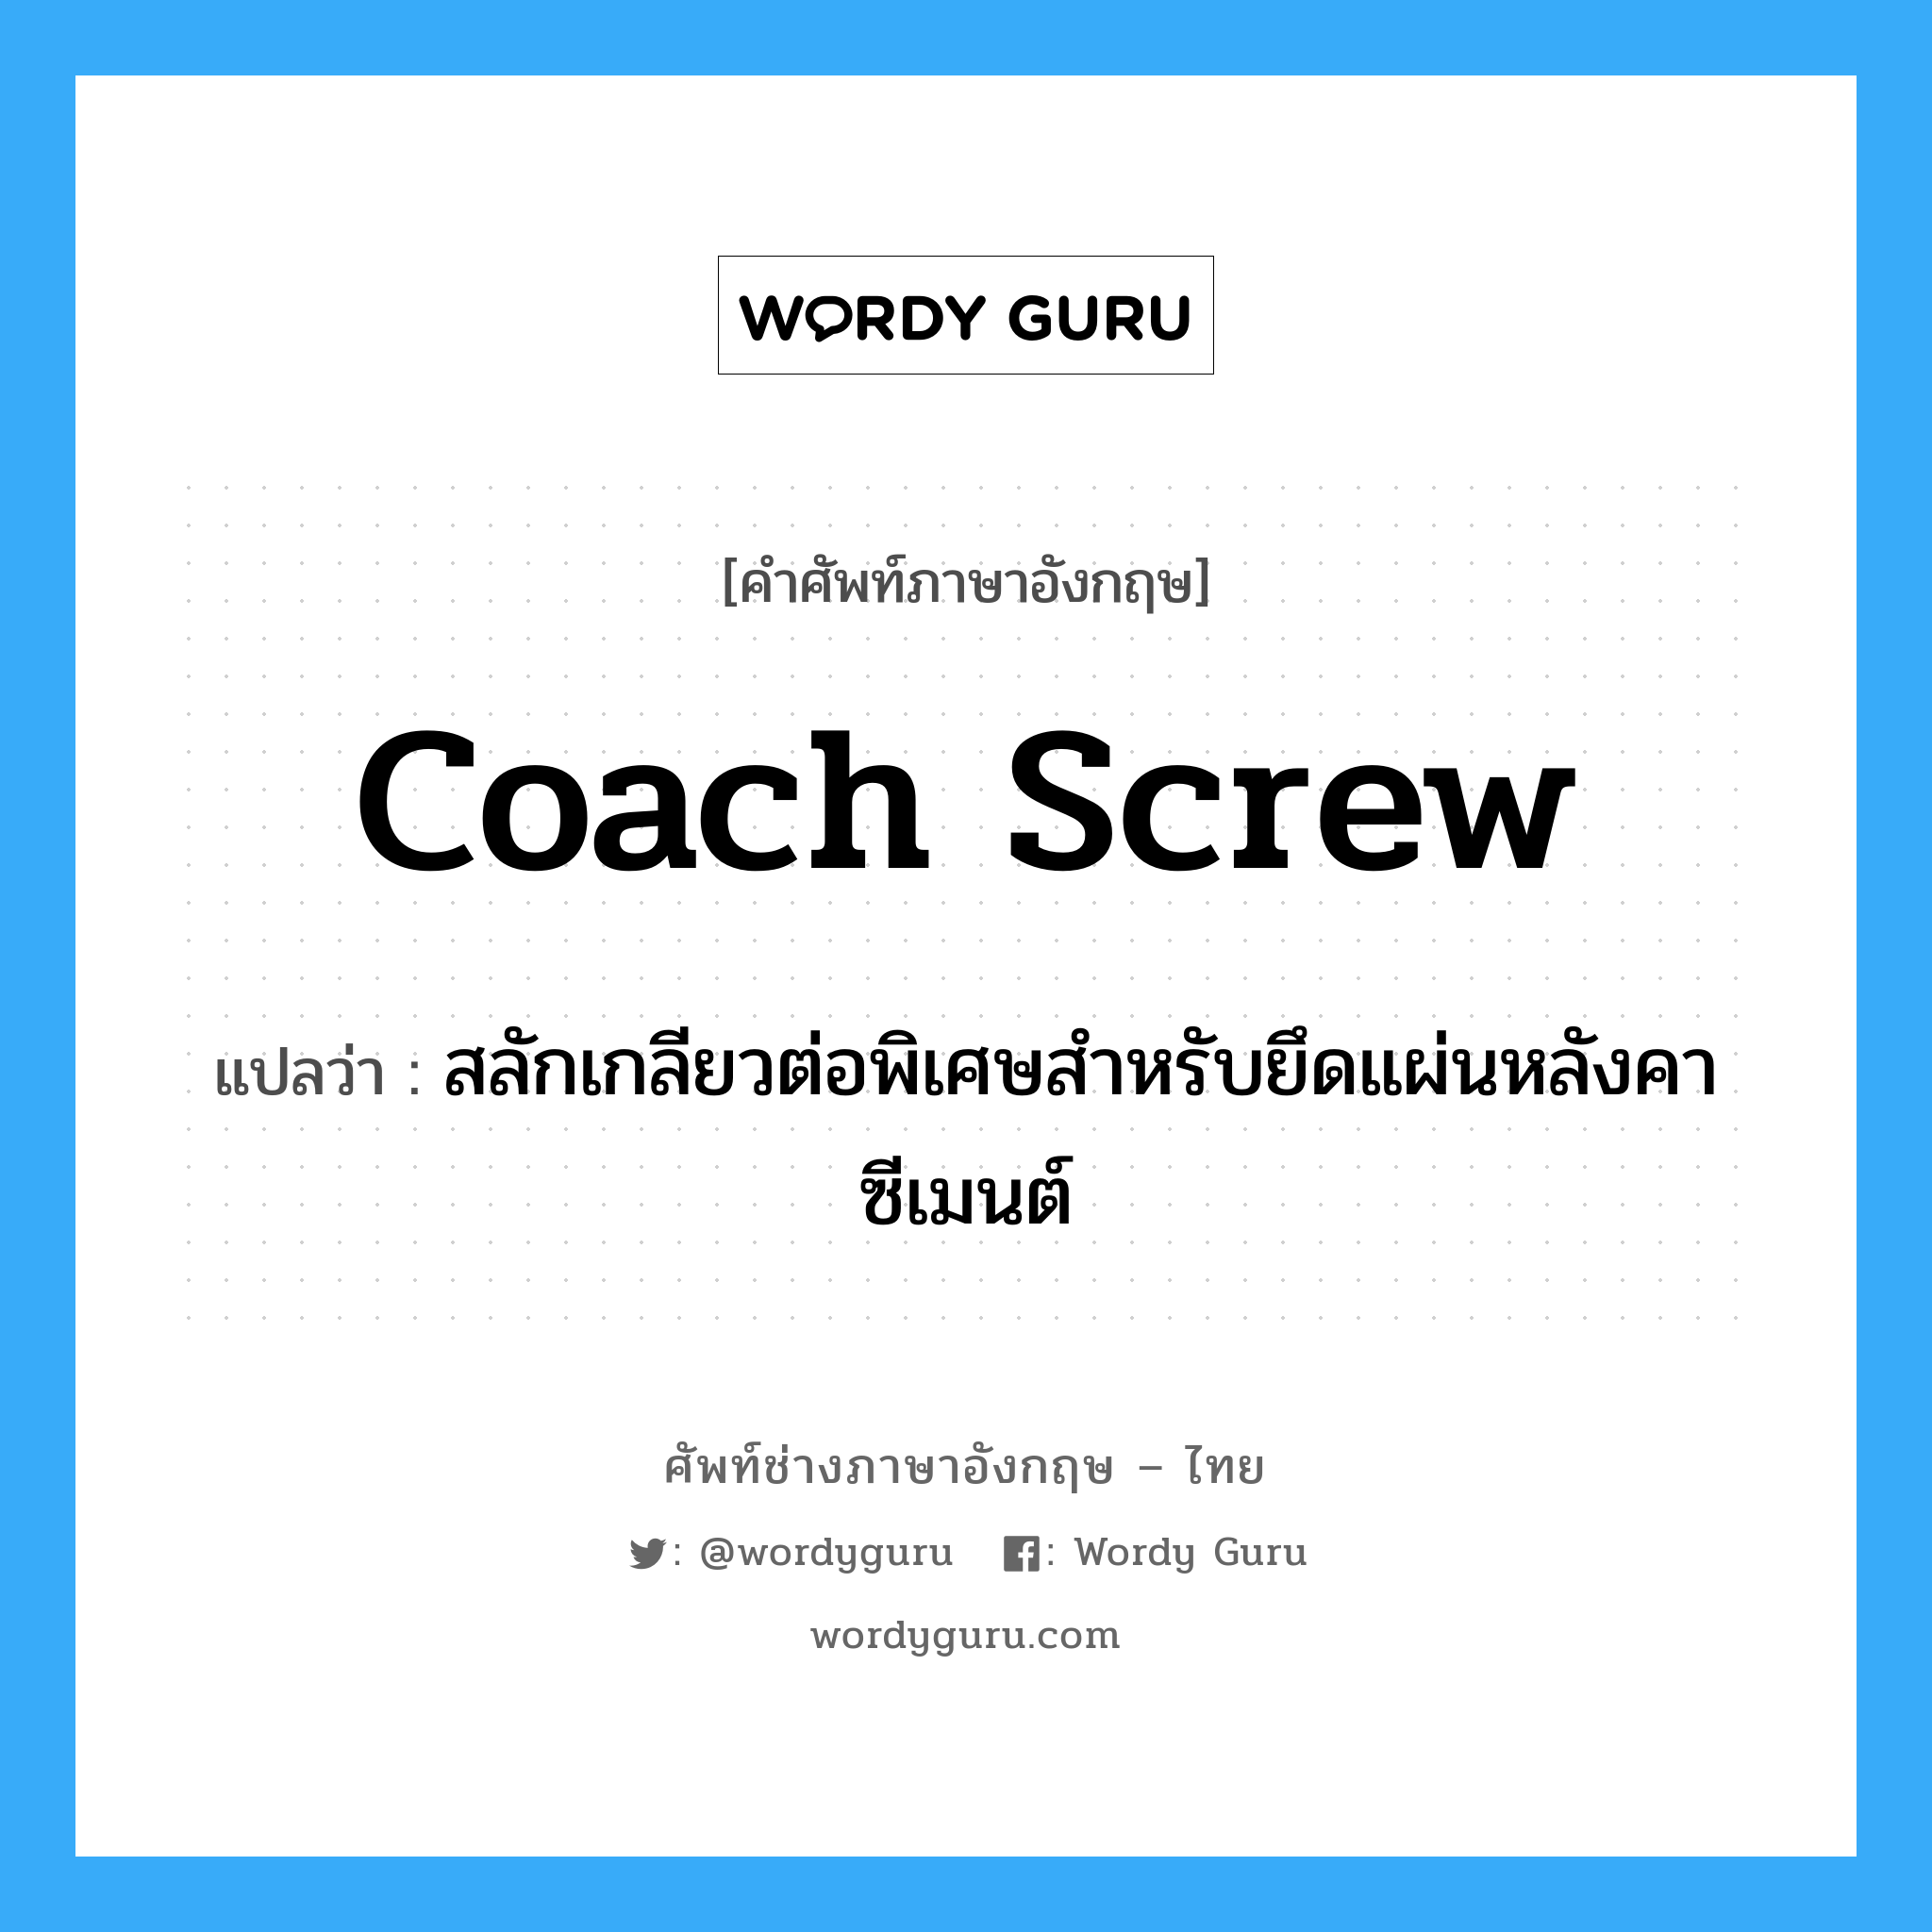 coach screw แปลว่า?, คำศัพท์ช่างภาษาอังกฤษ - ไทย coach screw คำศัพท์ภาษาอังกฤษ coach screw แปลว่า สลักเกลียวต่อพิเศษสำหรับยึดแผ่นหลังคาซีเมนต์